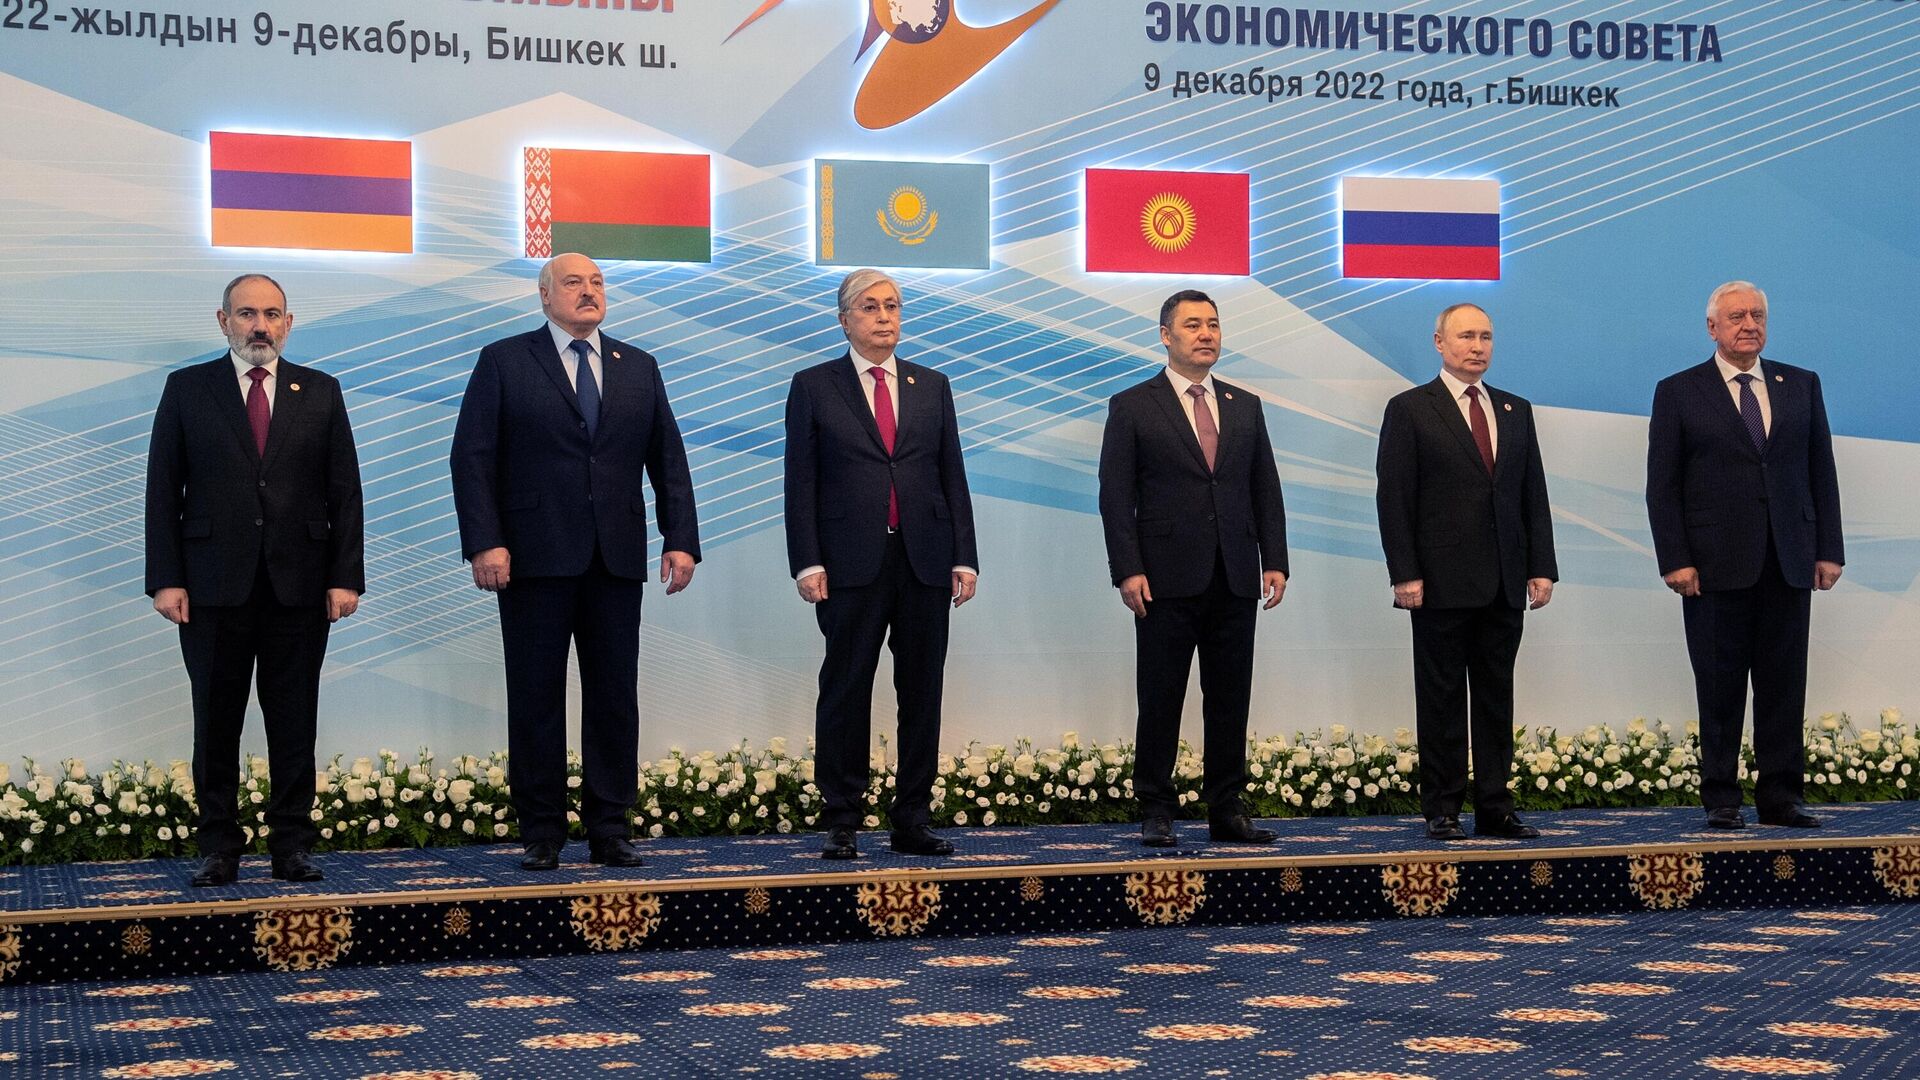 В Москве проходит юбилейный саммит ЕАЭС. Какие заявления сделали главы государств?